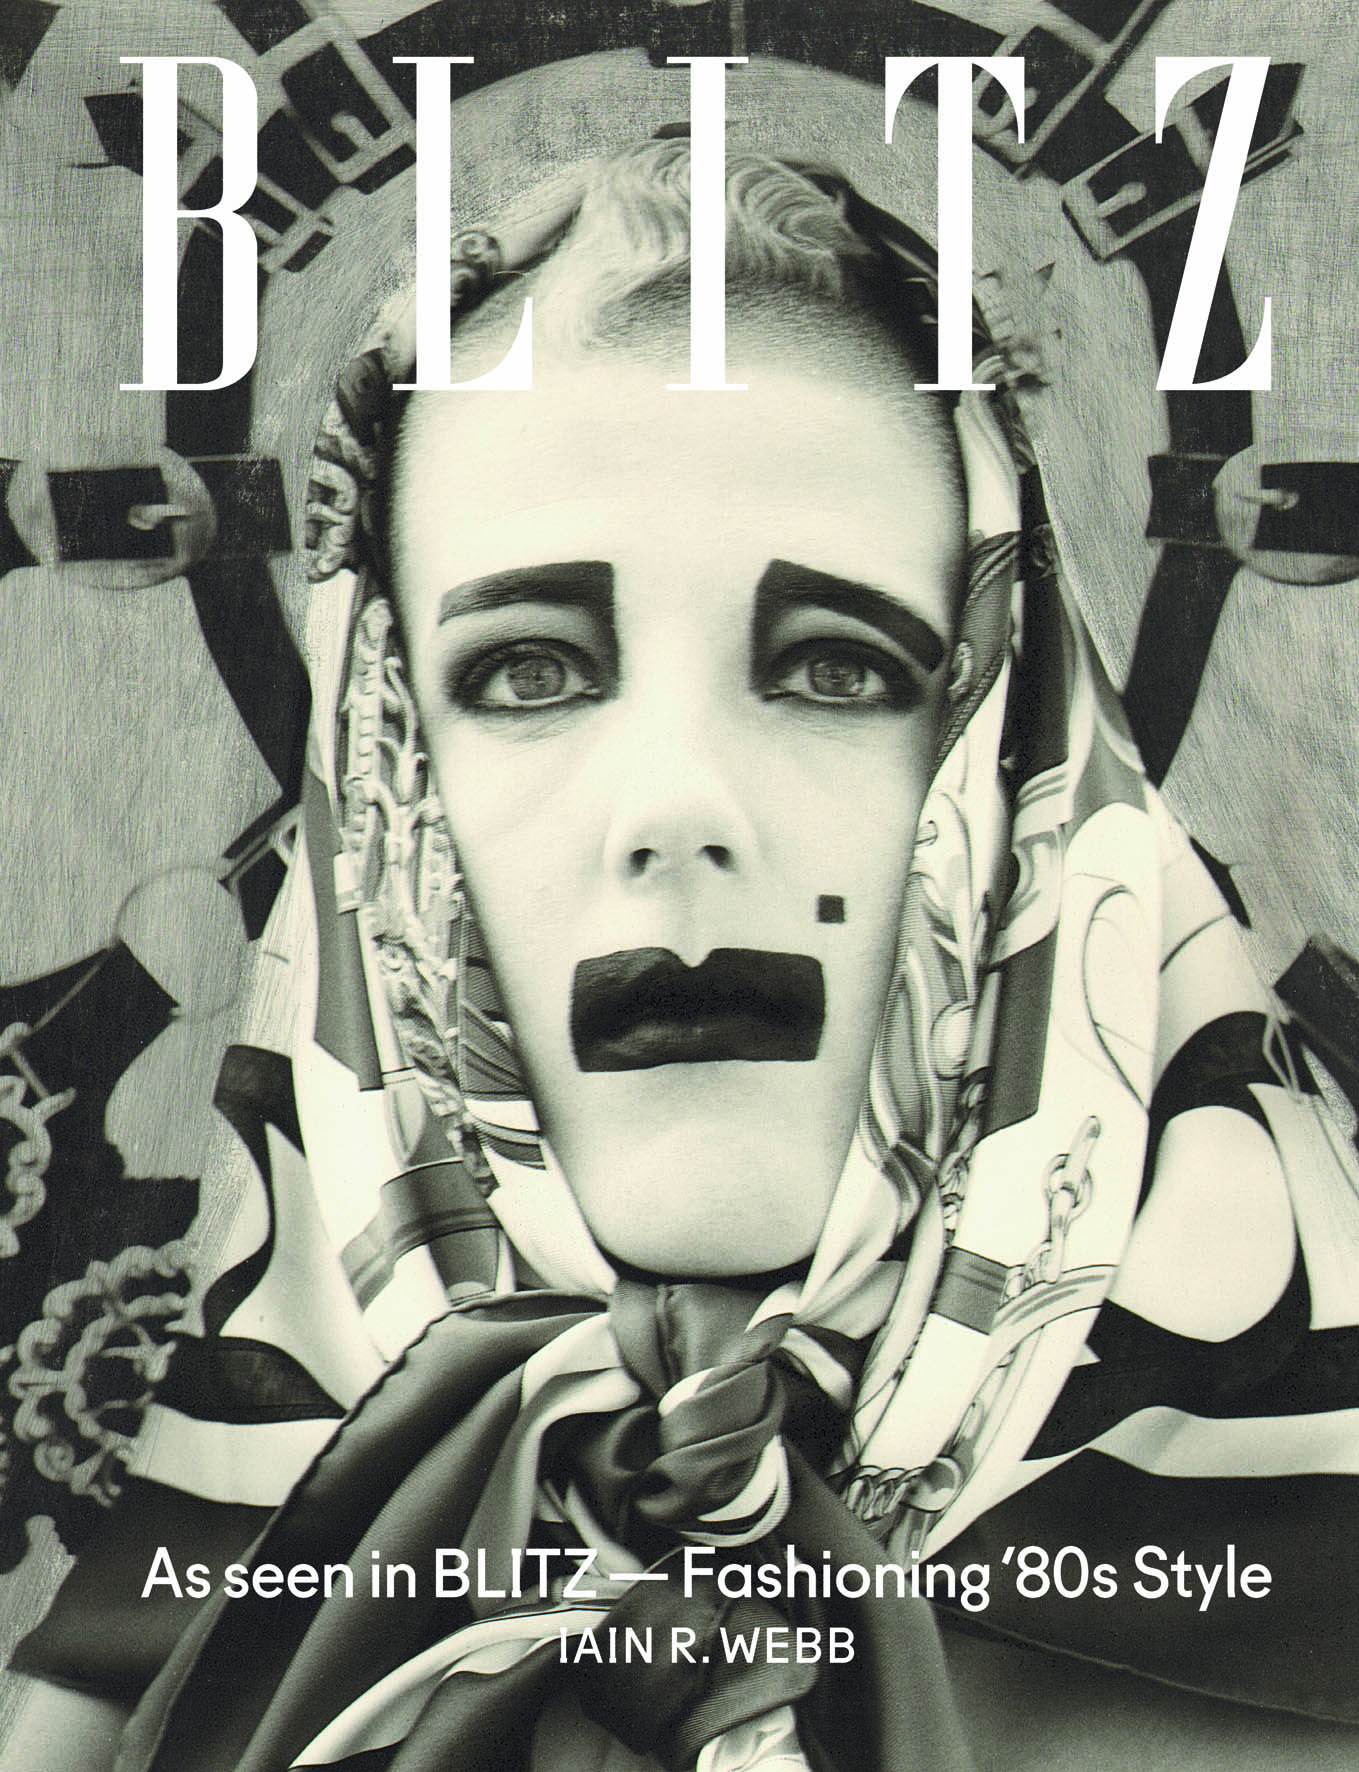 As seen on Blitz: El nuevo libro que recopila la estética británica de los ‘80